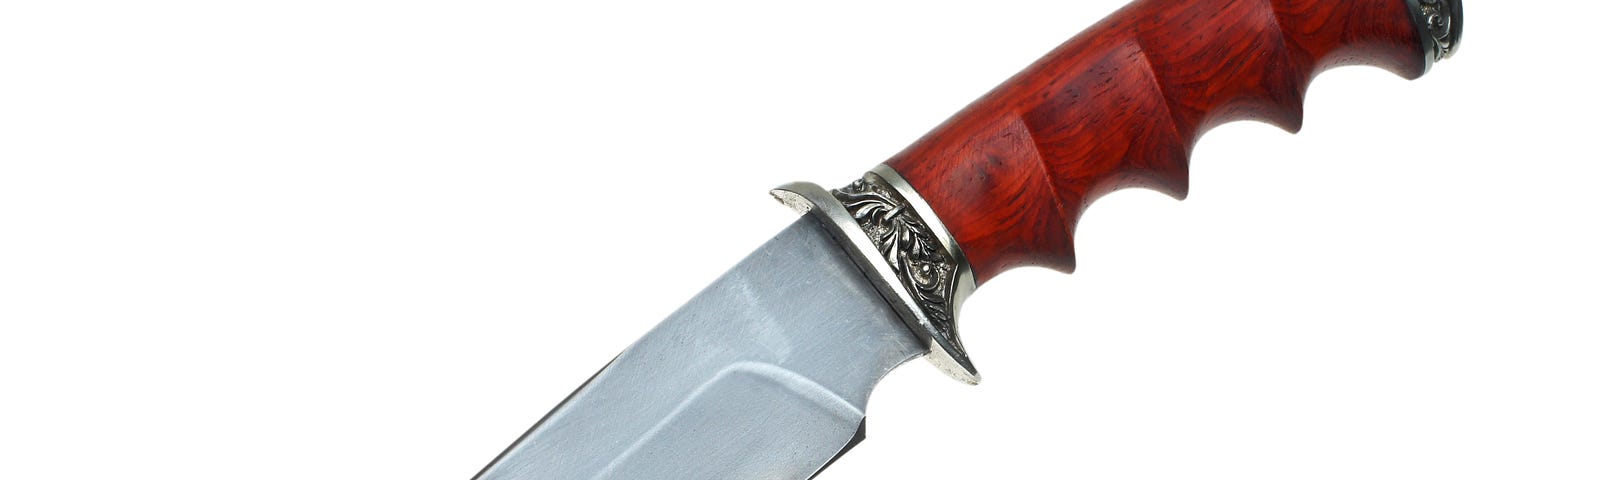 Ornate hunting knife